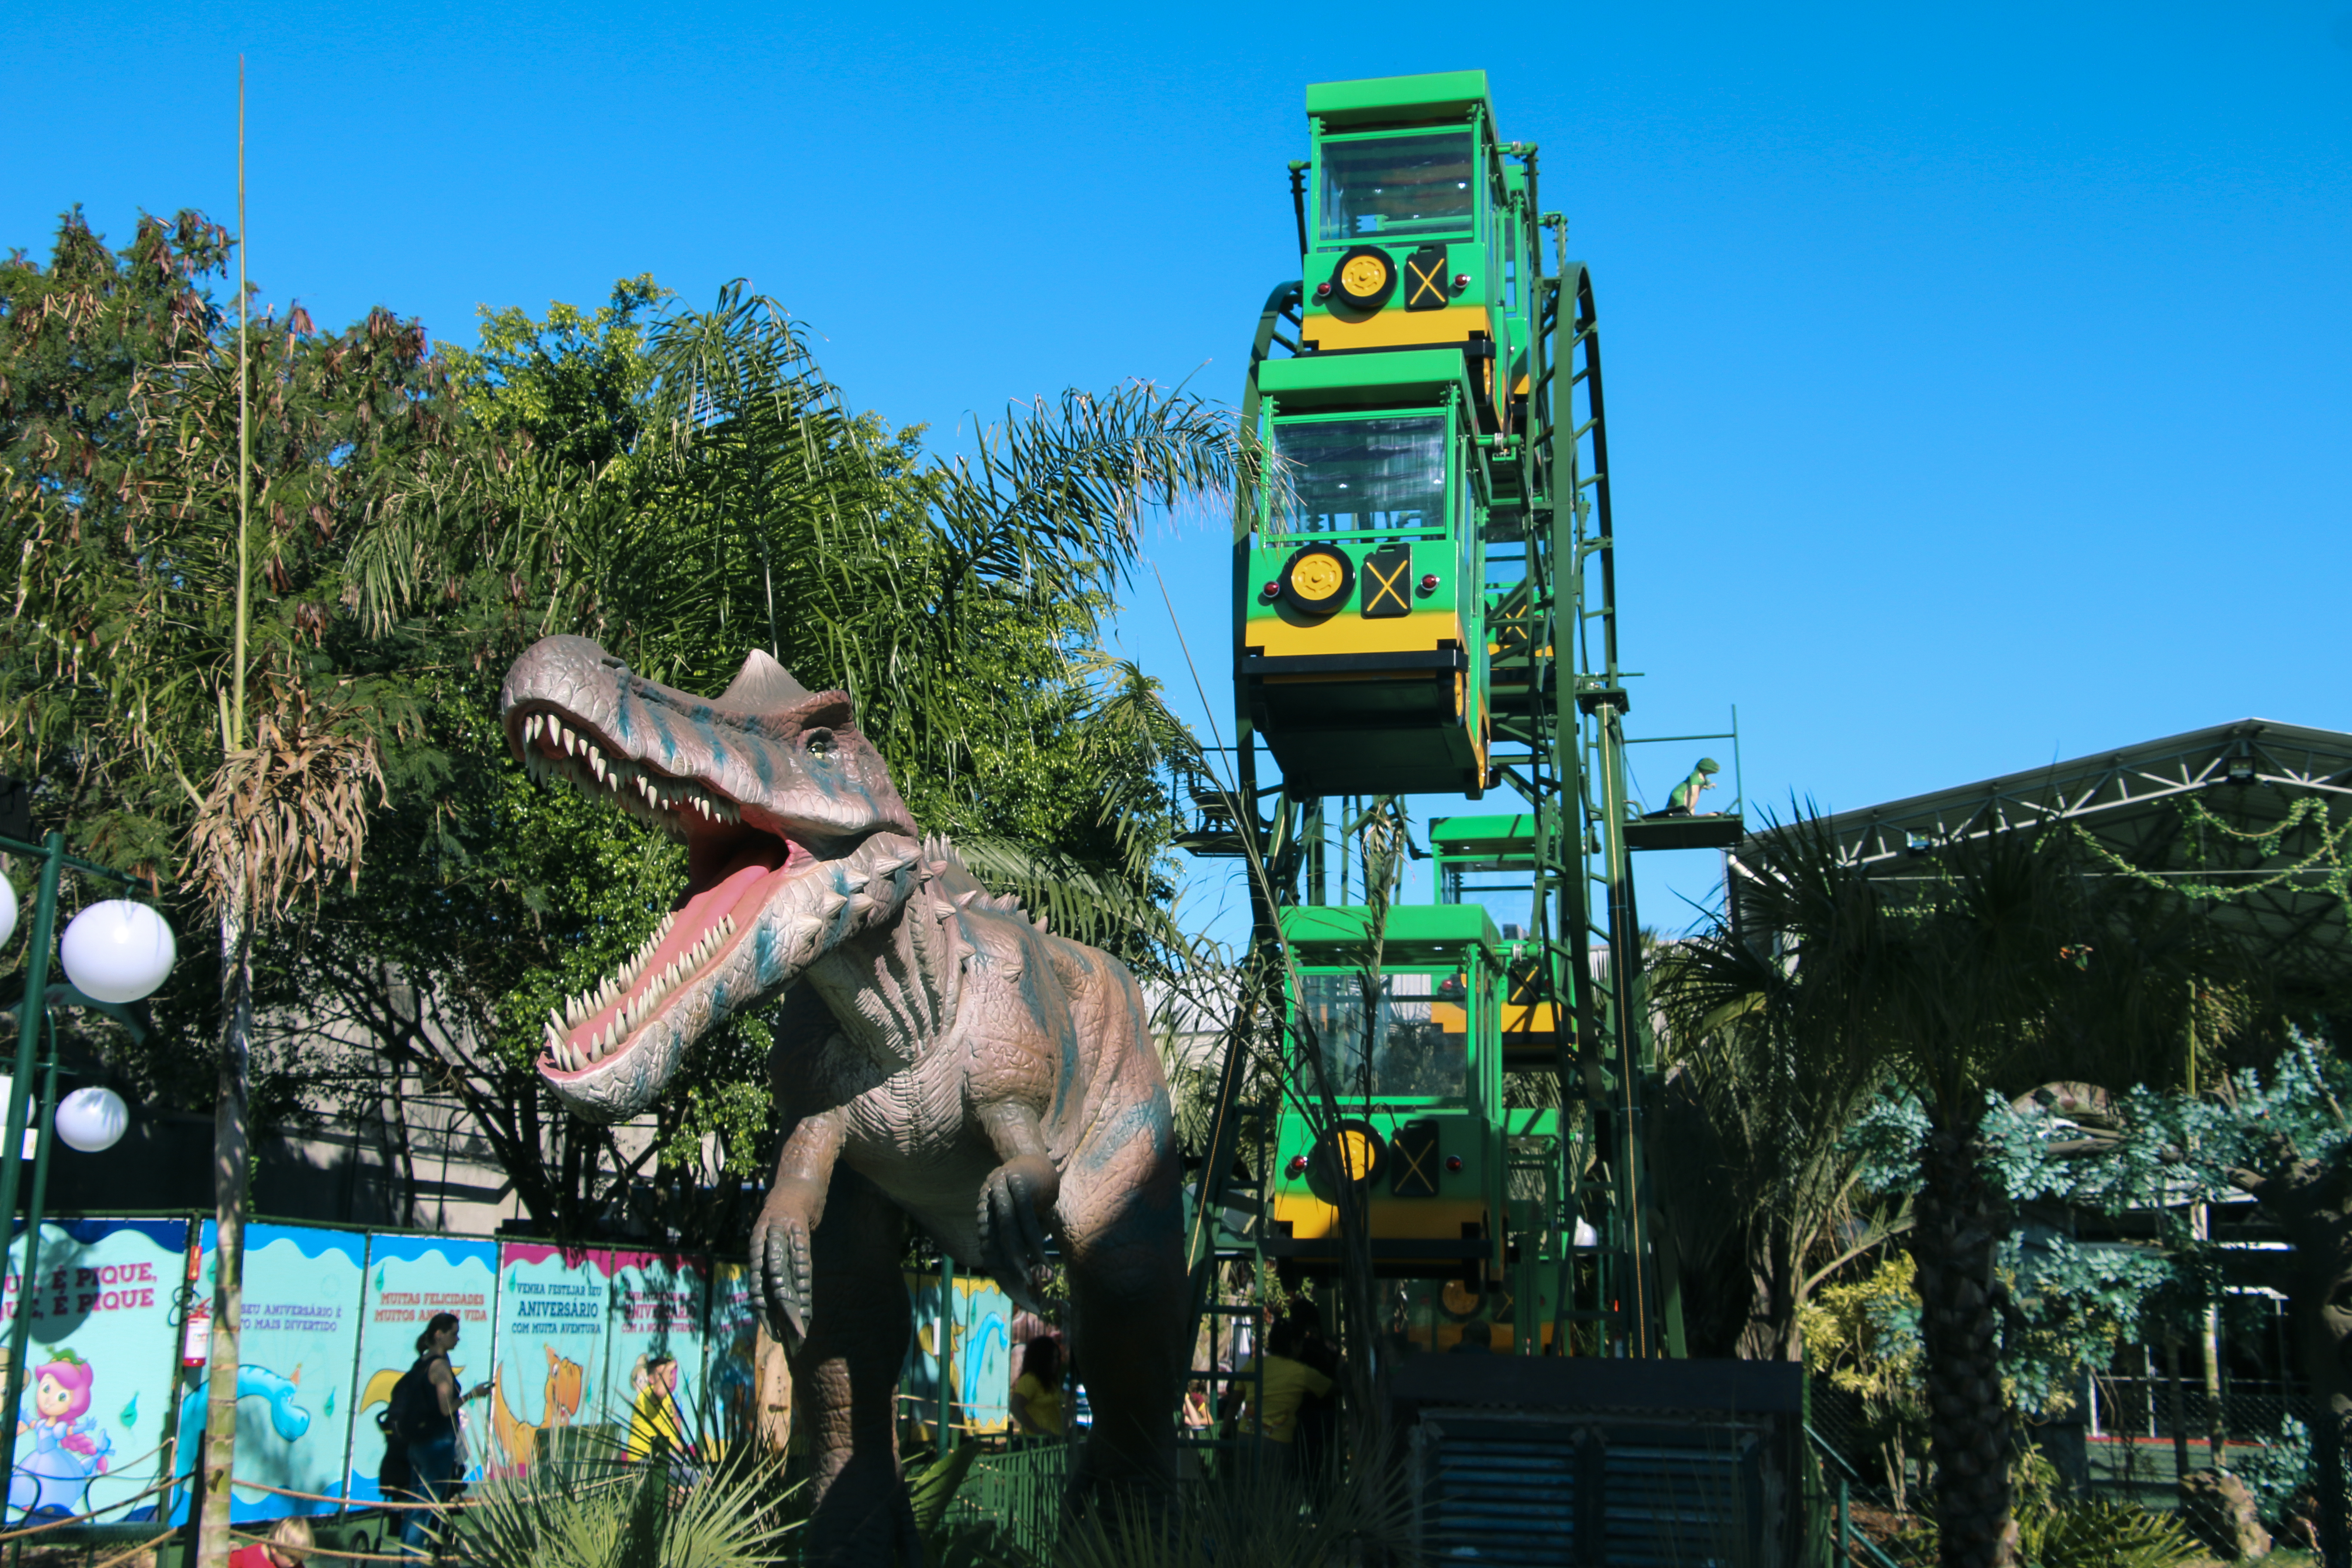 Parque de dinossauros faz sucesso no interior de São Paulo | VEJA SÃO PAULO